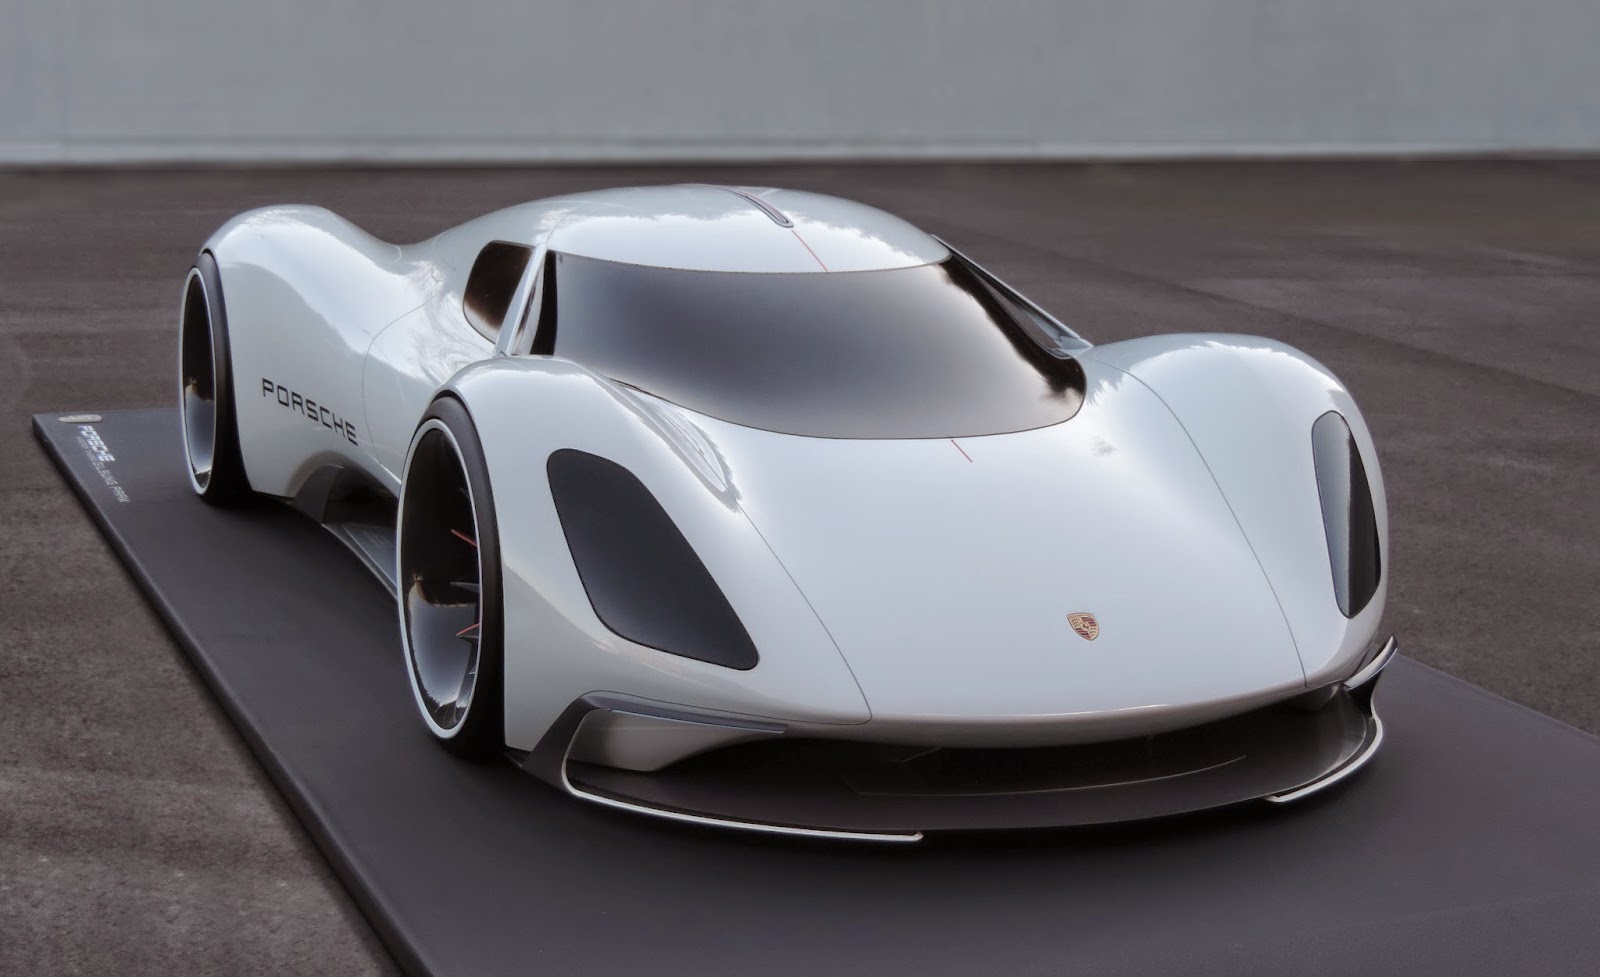 Porsche Electric Le Mans 2035 Prototype Looks Believable and Makes